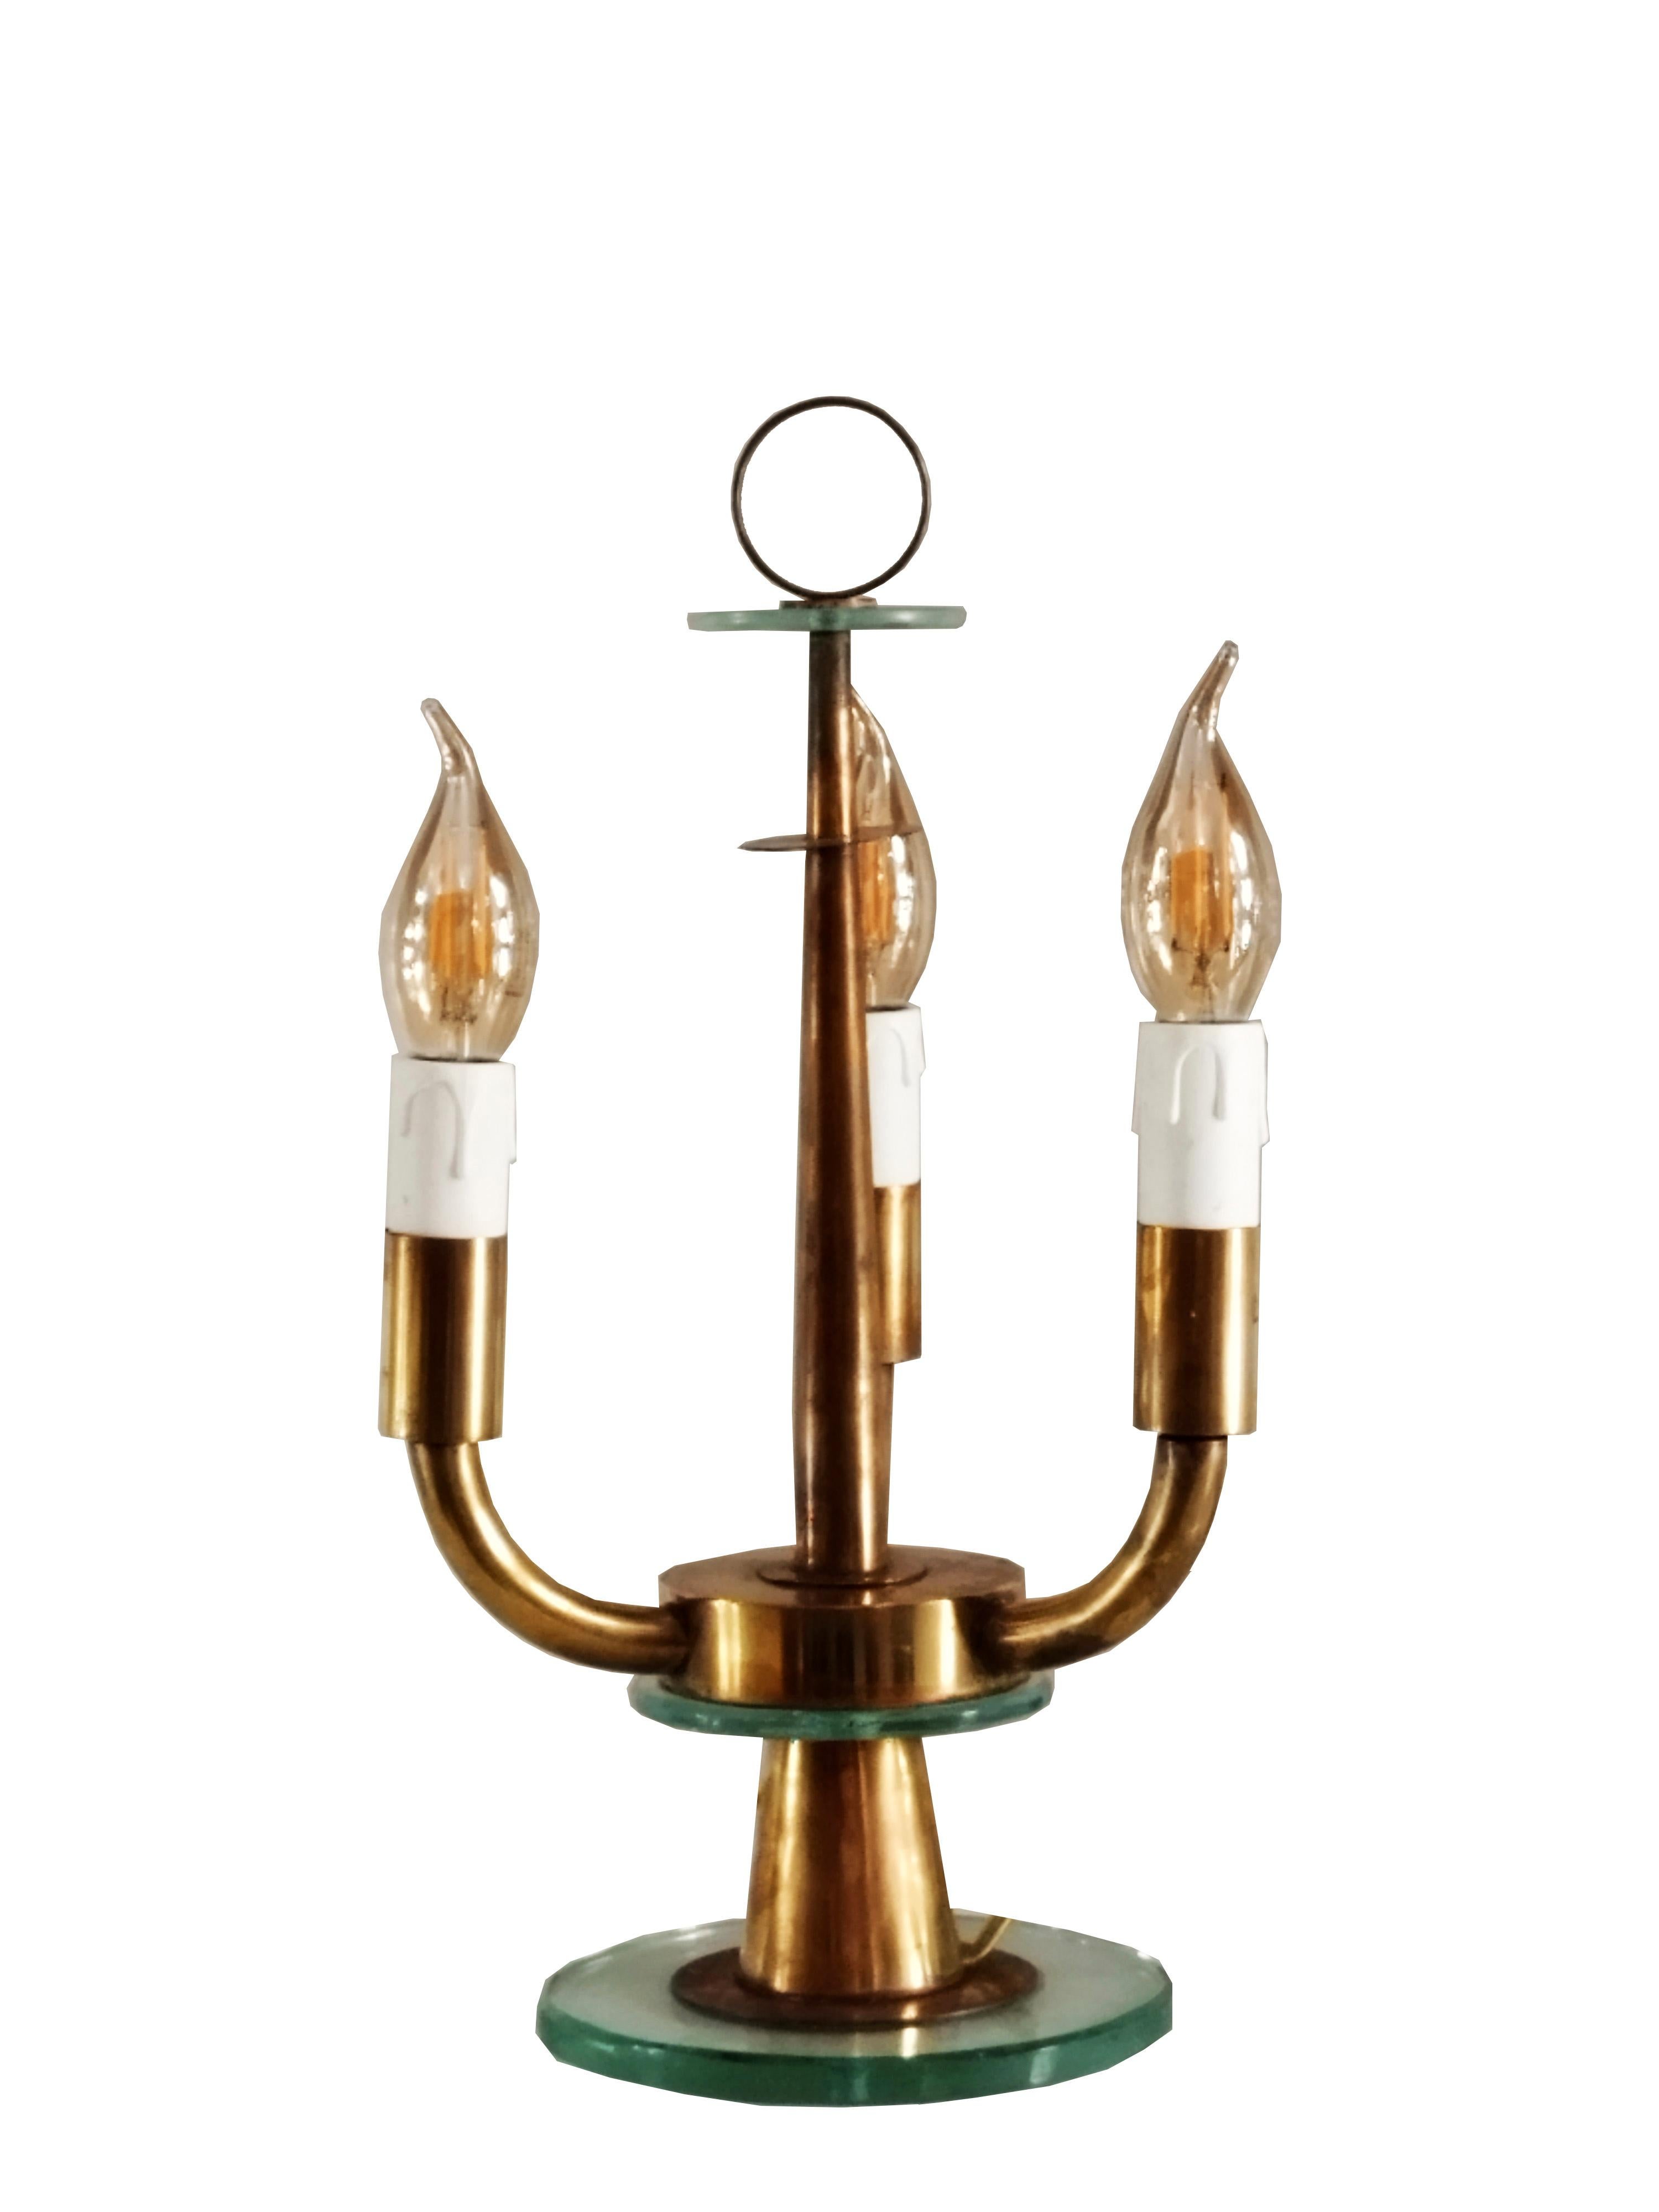 Lampe de table de la fin des années 1940 par le designer Pietro Chiesa, directeur artistique de Fontana Arte jusqu'en 1948. Dans la lampe de table, l'usure particulière du laiton et le meulage du verre, avec sa teinte vert Nil, rendent la lampe